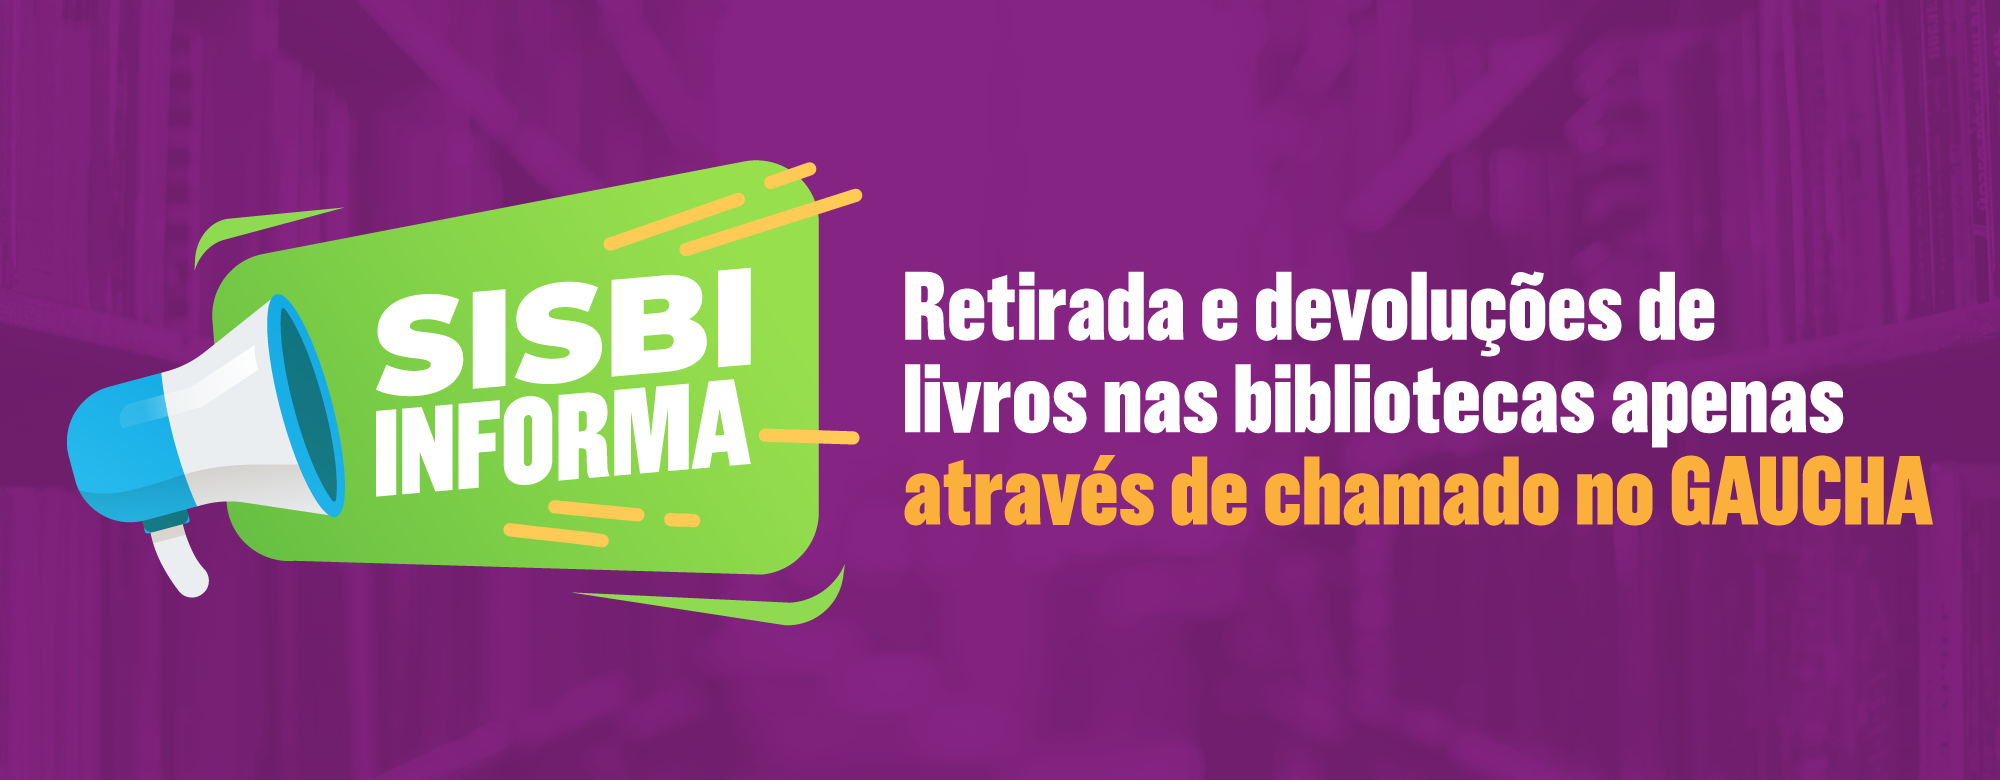 Retiradas e devoluções de livros nas Bibliotecas apenas através de chamados no Gaúcha.